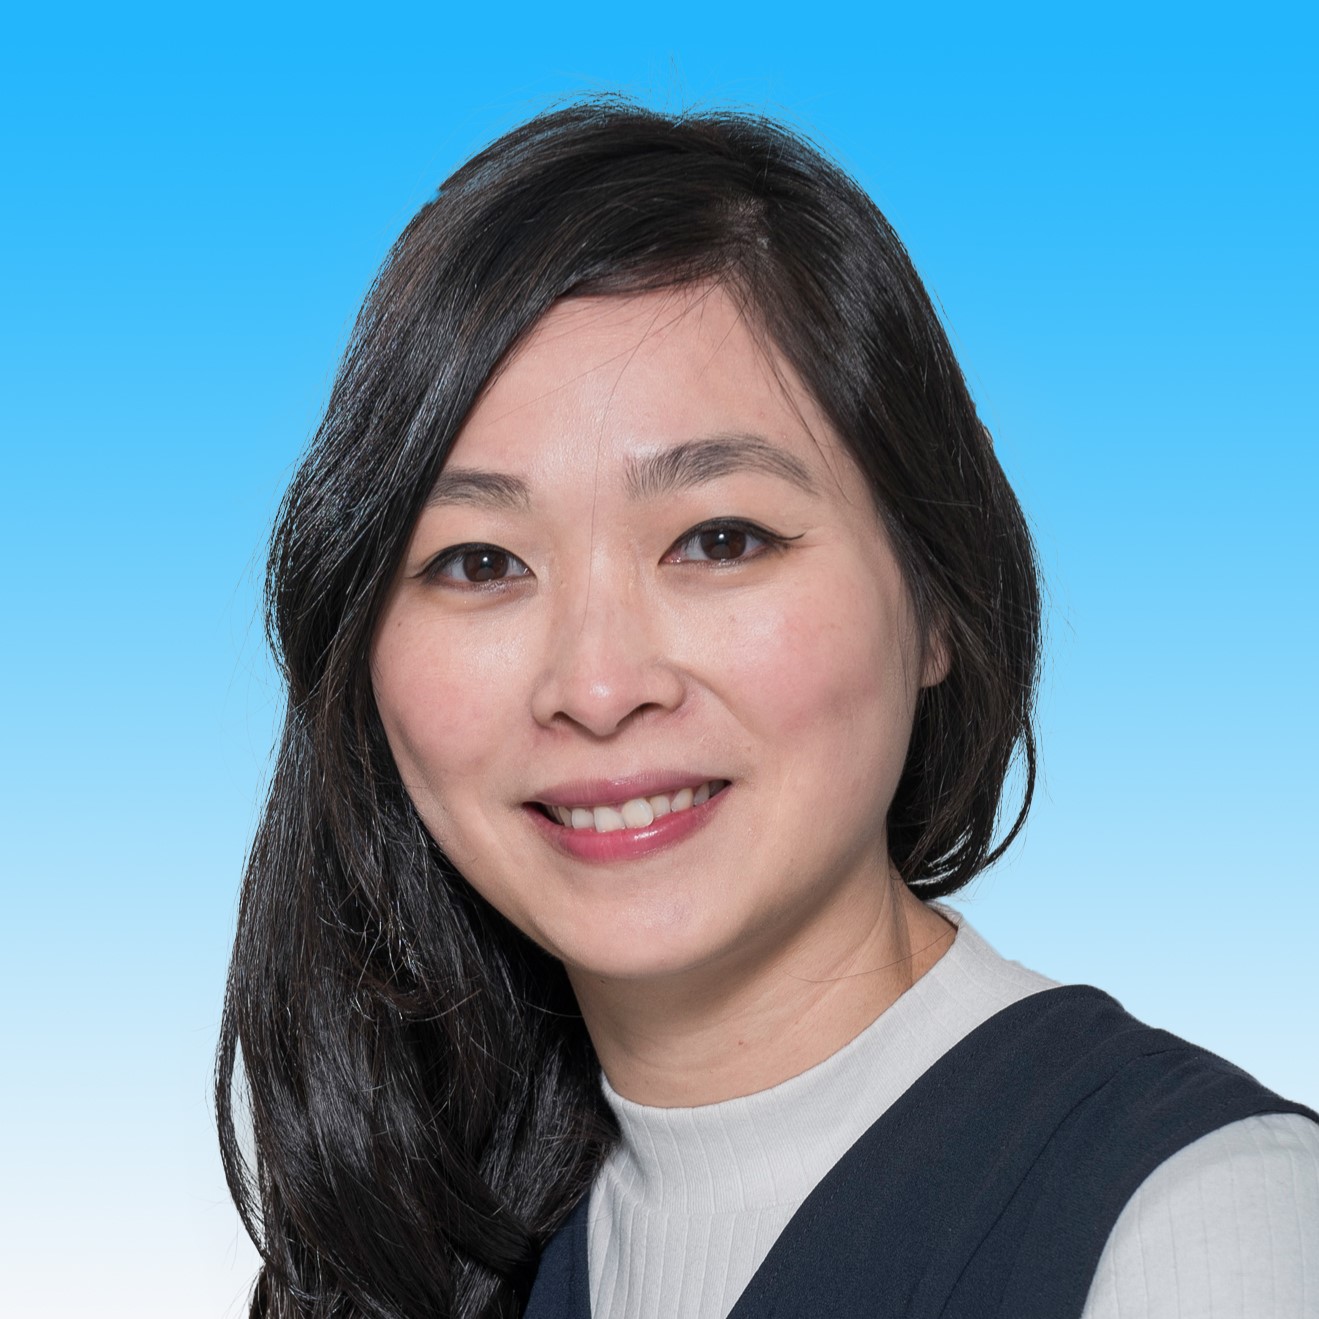 Ms. Natalie Yau